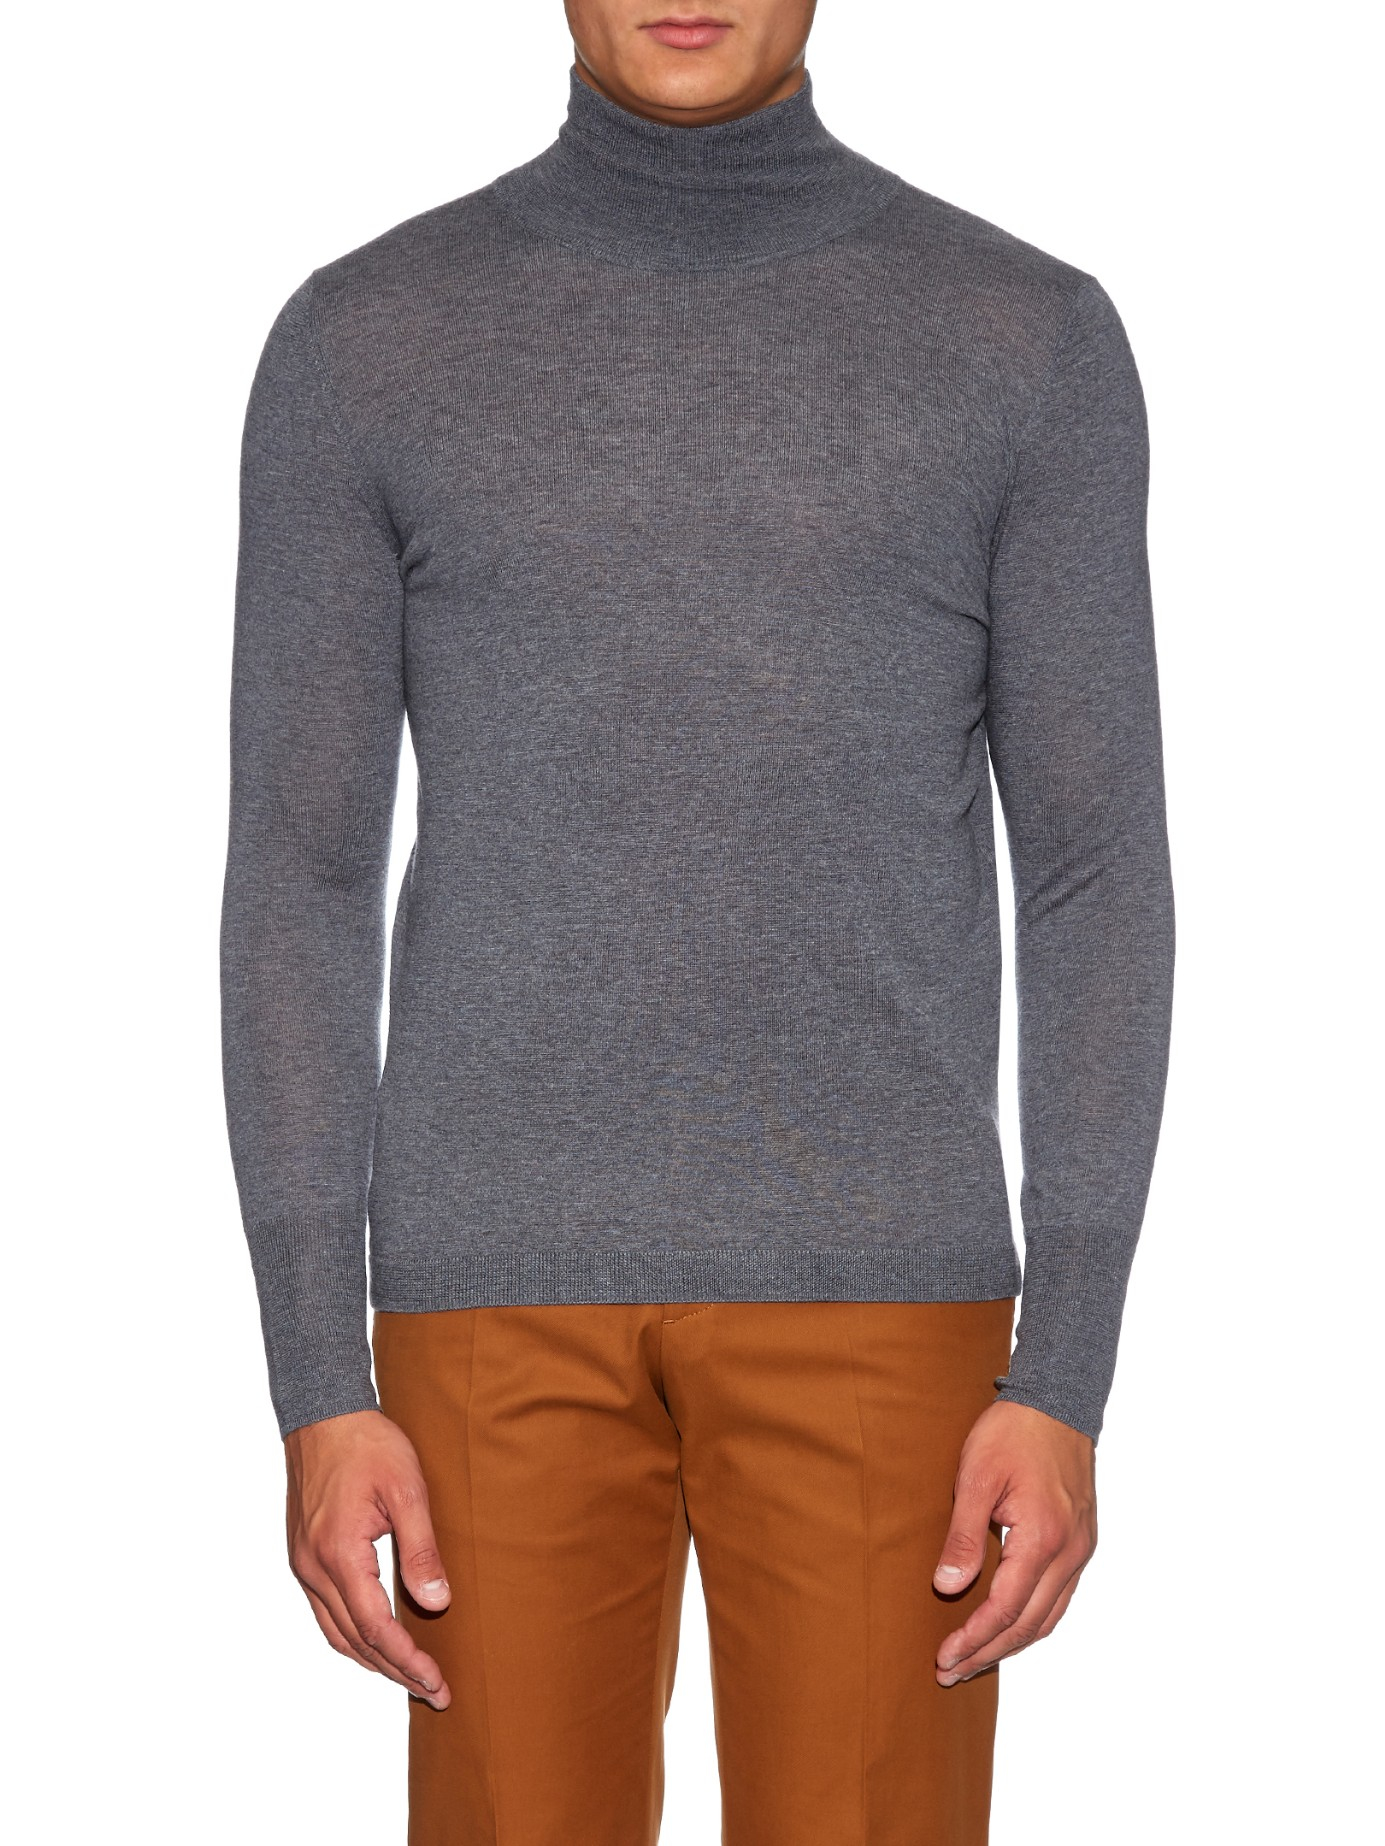 Lyst - Acne Studios Joakim Roll-neck Wool Sweater in Gray for Men